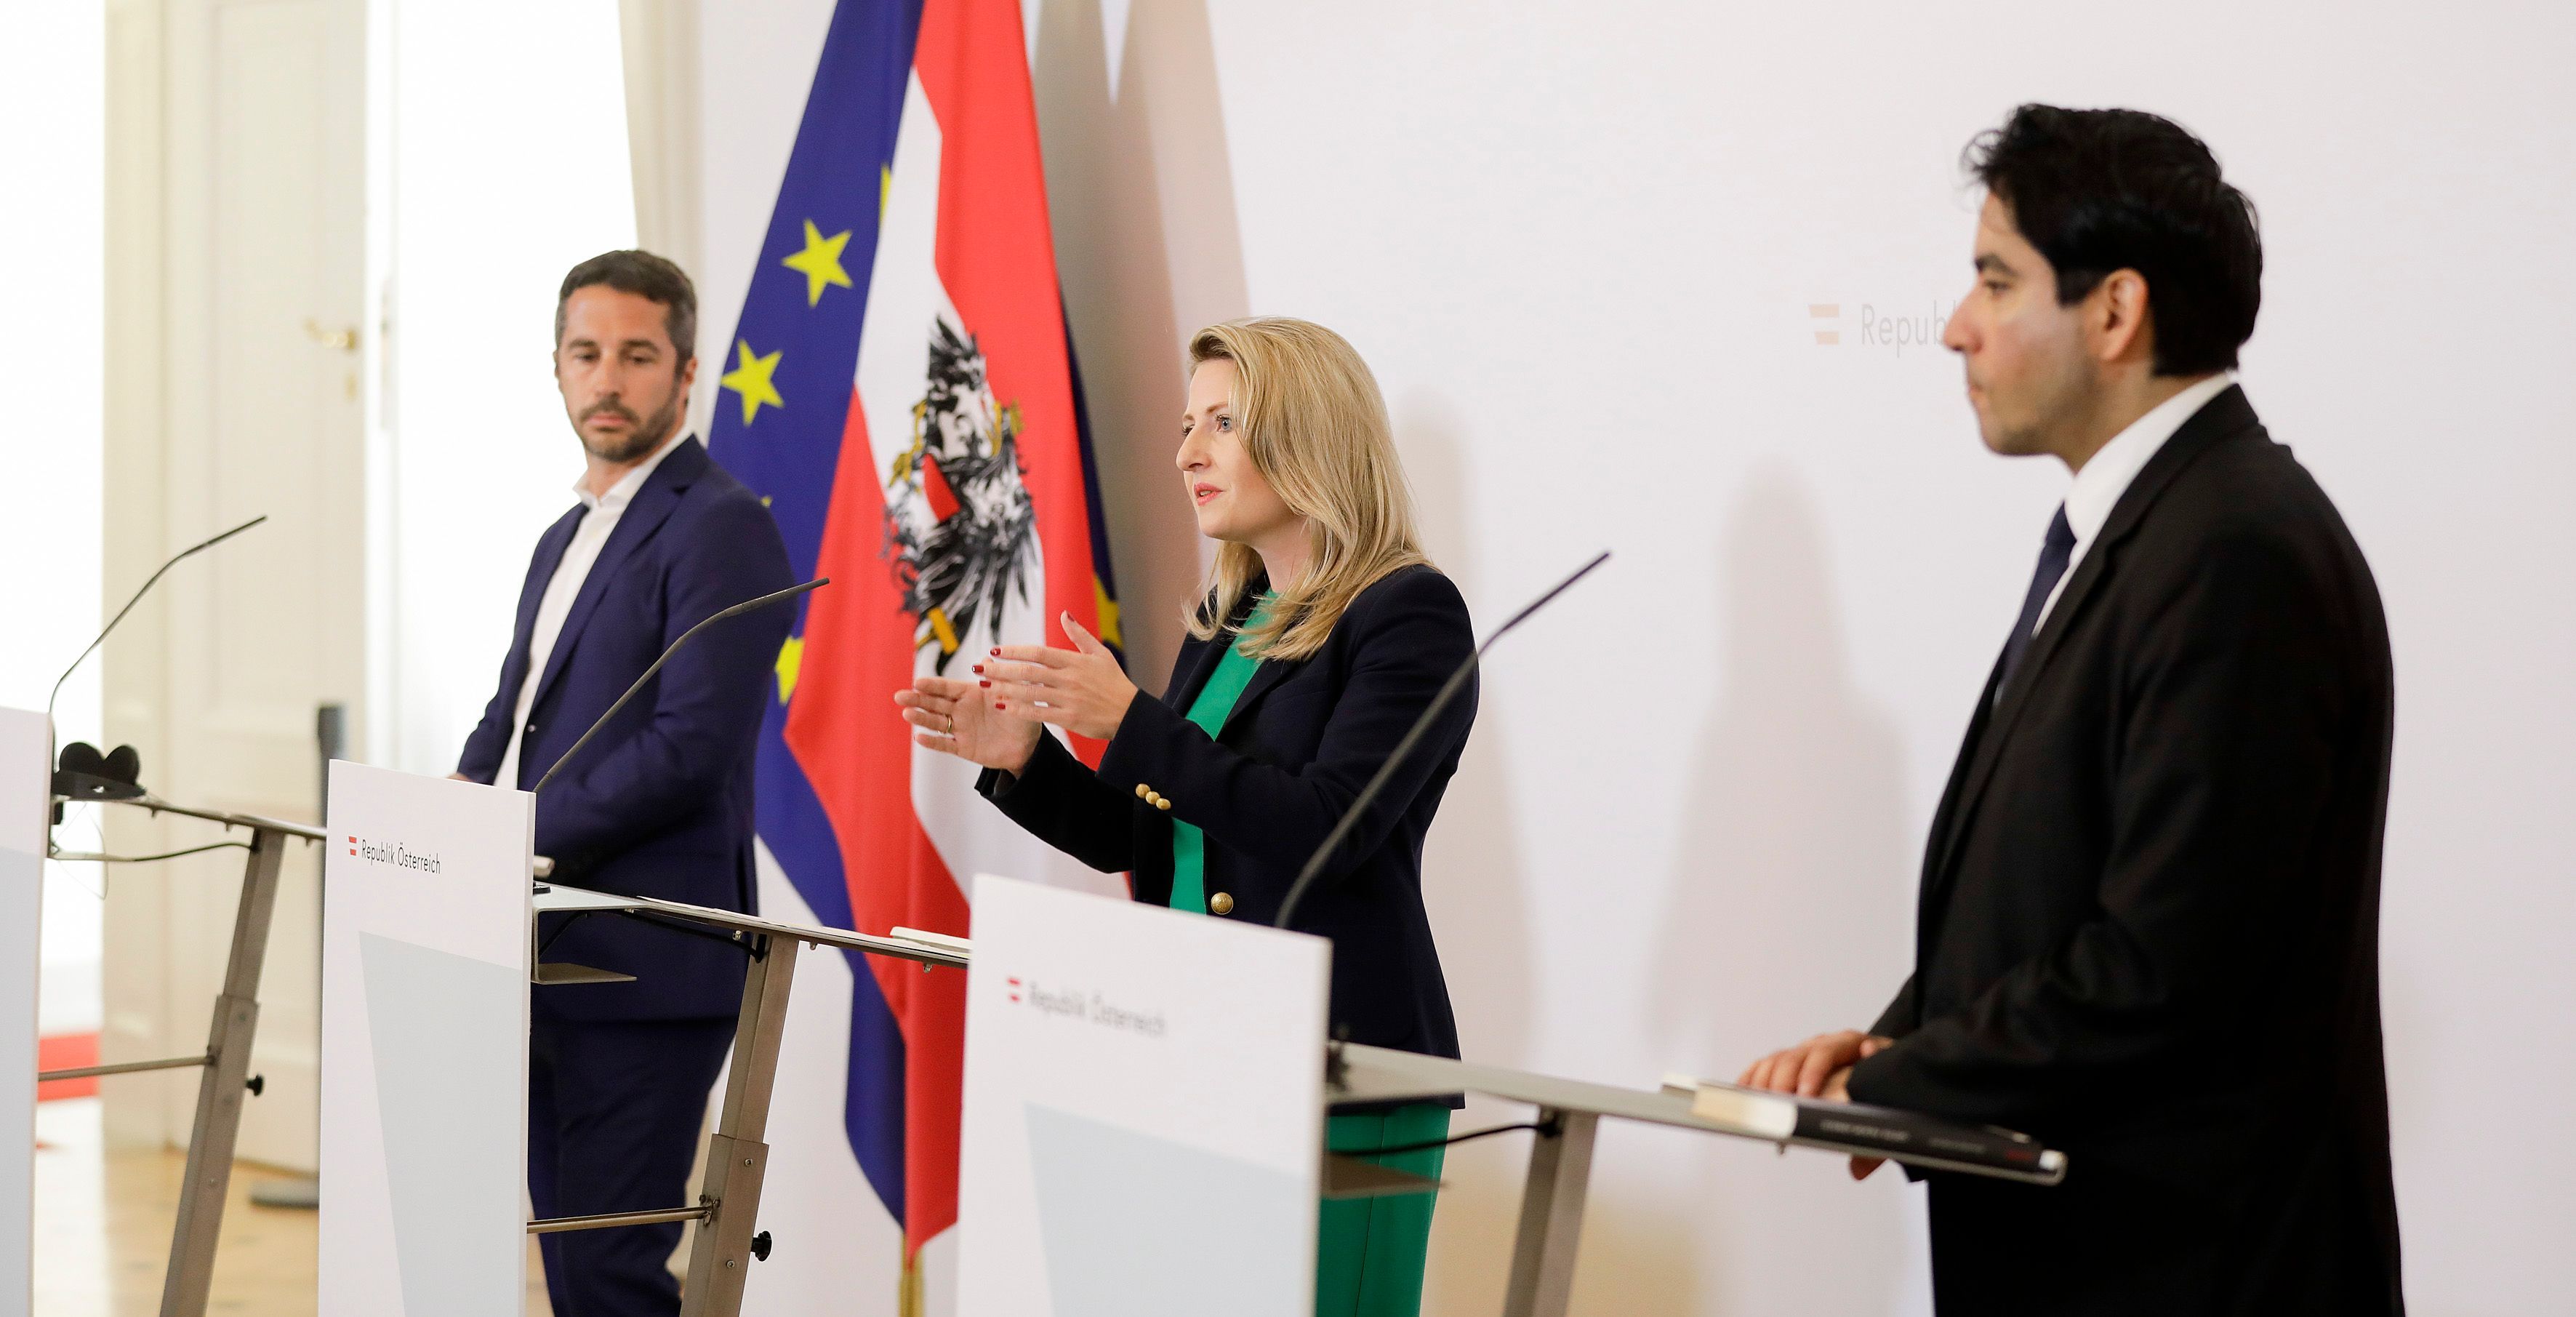 Lorenzo Vidino, Susanne Raab,  Mouhanad Khorchide stehen vor Rednerpulten, im Hintergrund sind die österreichische und die europäische Flagge zu sehen